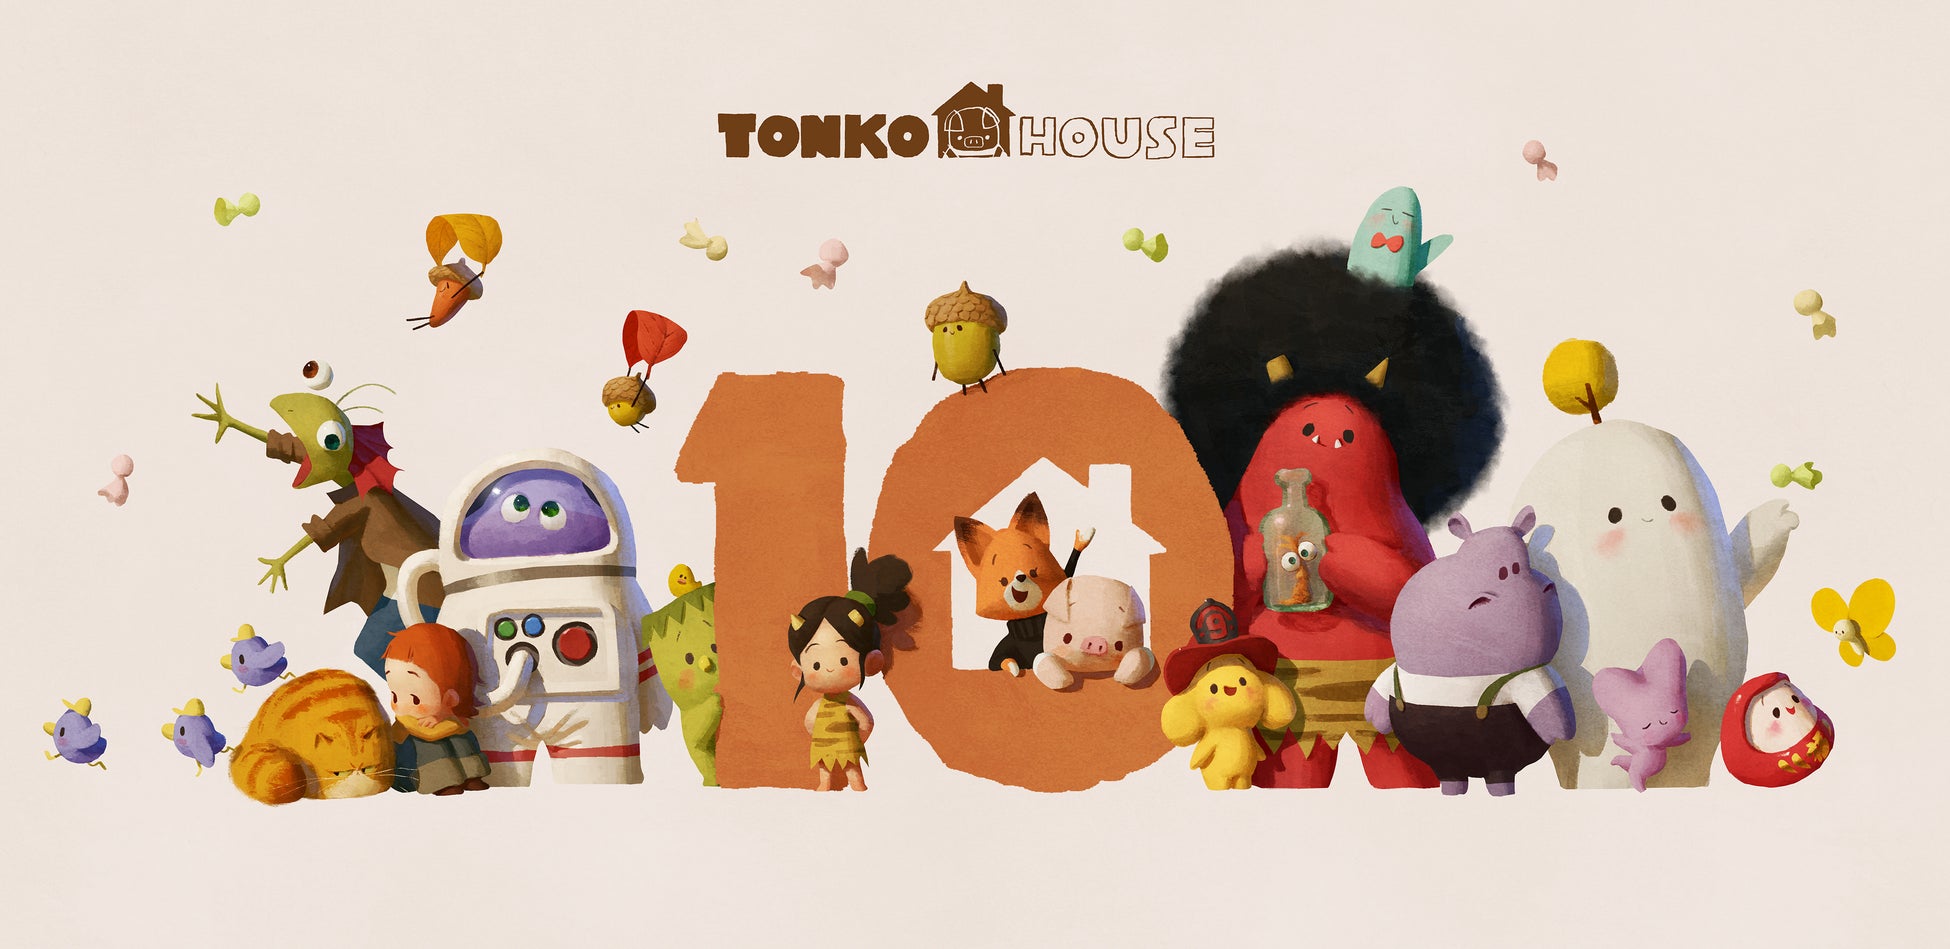 世界基準のアニメーション制作の裏側を伝える。アニメーションスタジオ「トンコハウス」設立10周年記念！見て、学んで、食べて、楽しめる10周年がスタート！